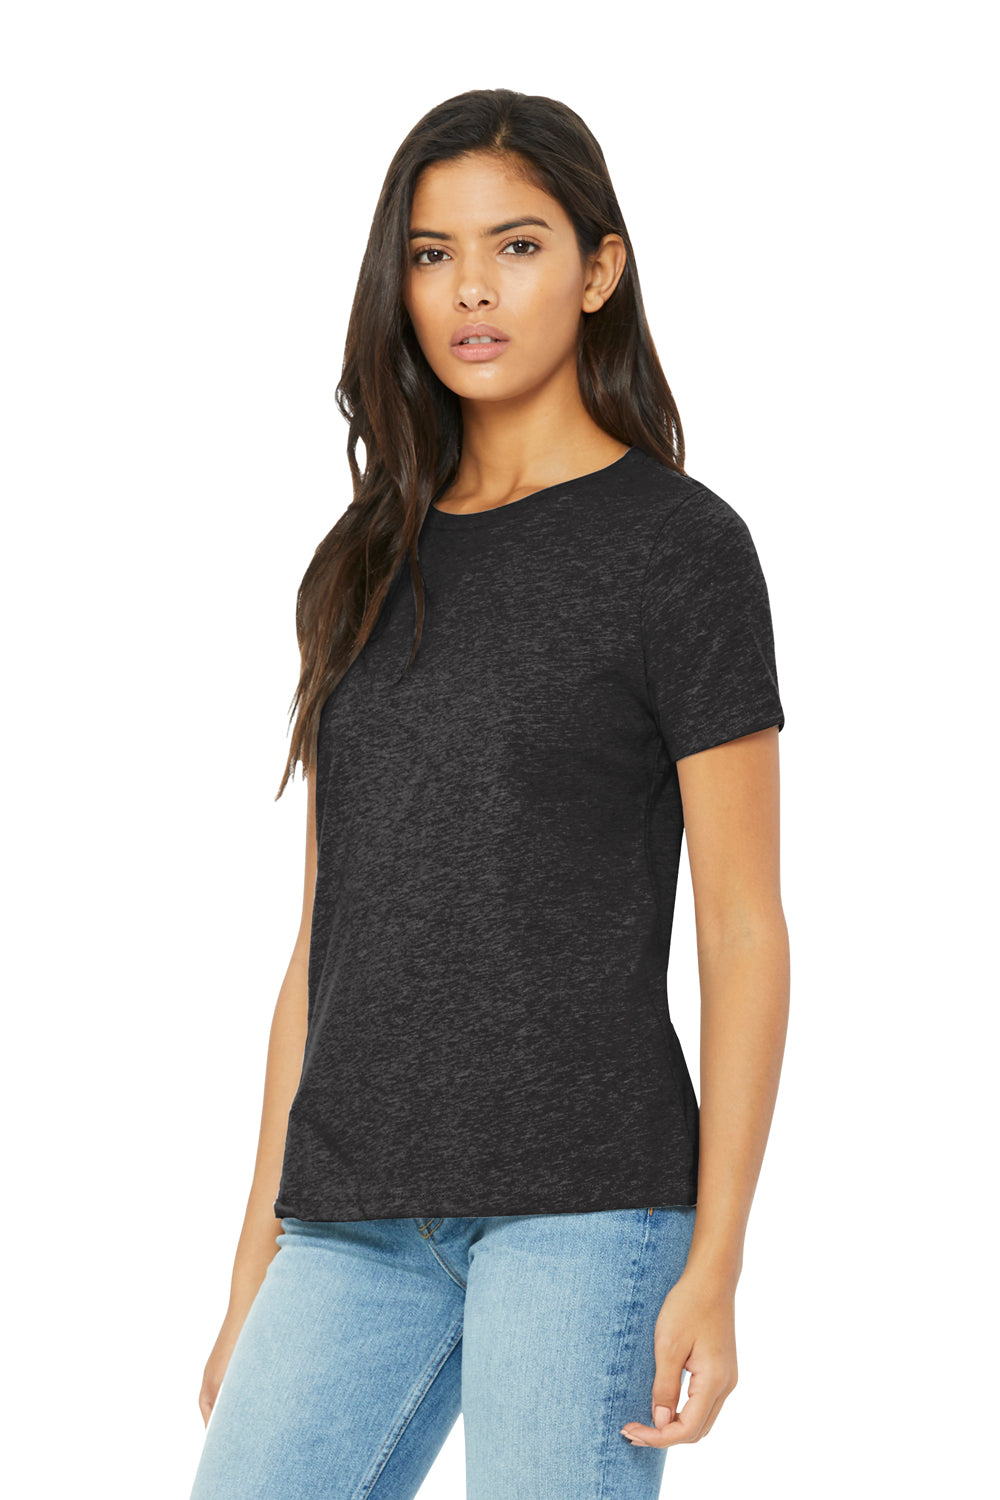 Bella + Canvas BC6413 Womens Short Sleeve Crewneck T-Shirt Charcoal Black Model 3Q